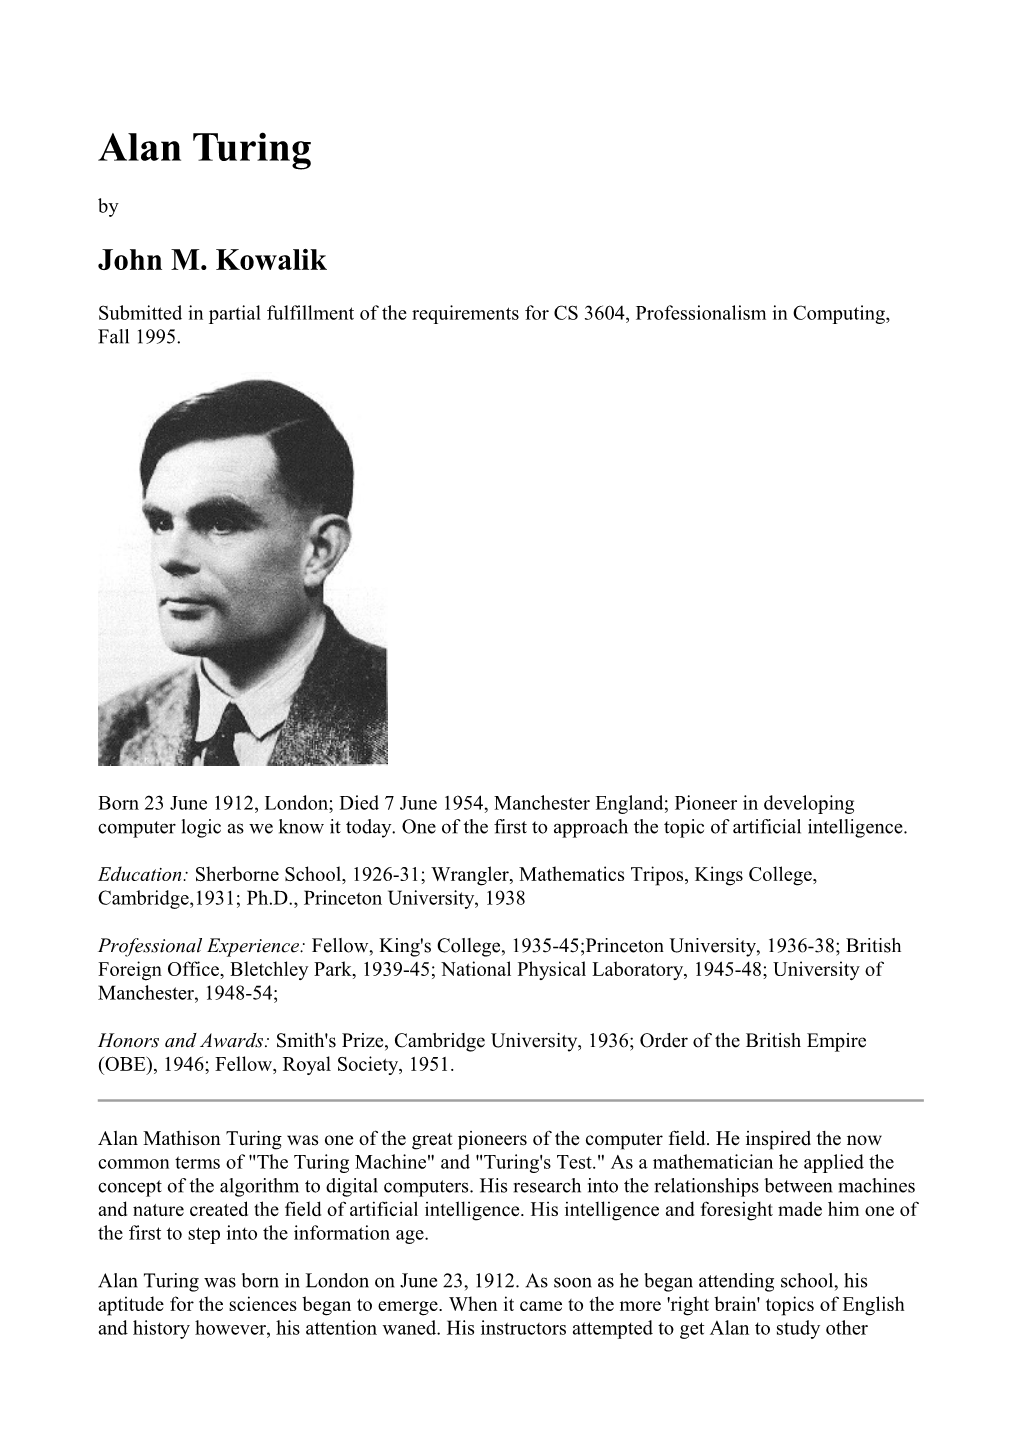 John M. Kowalik